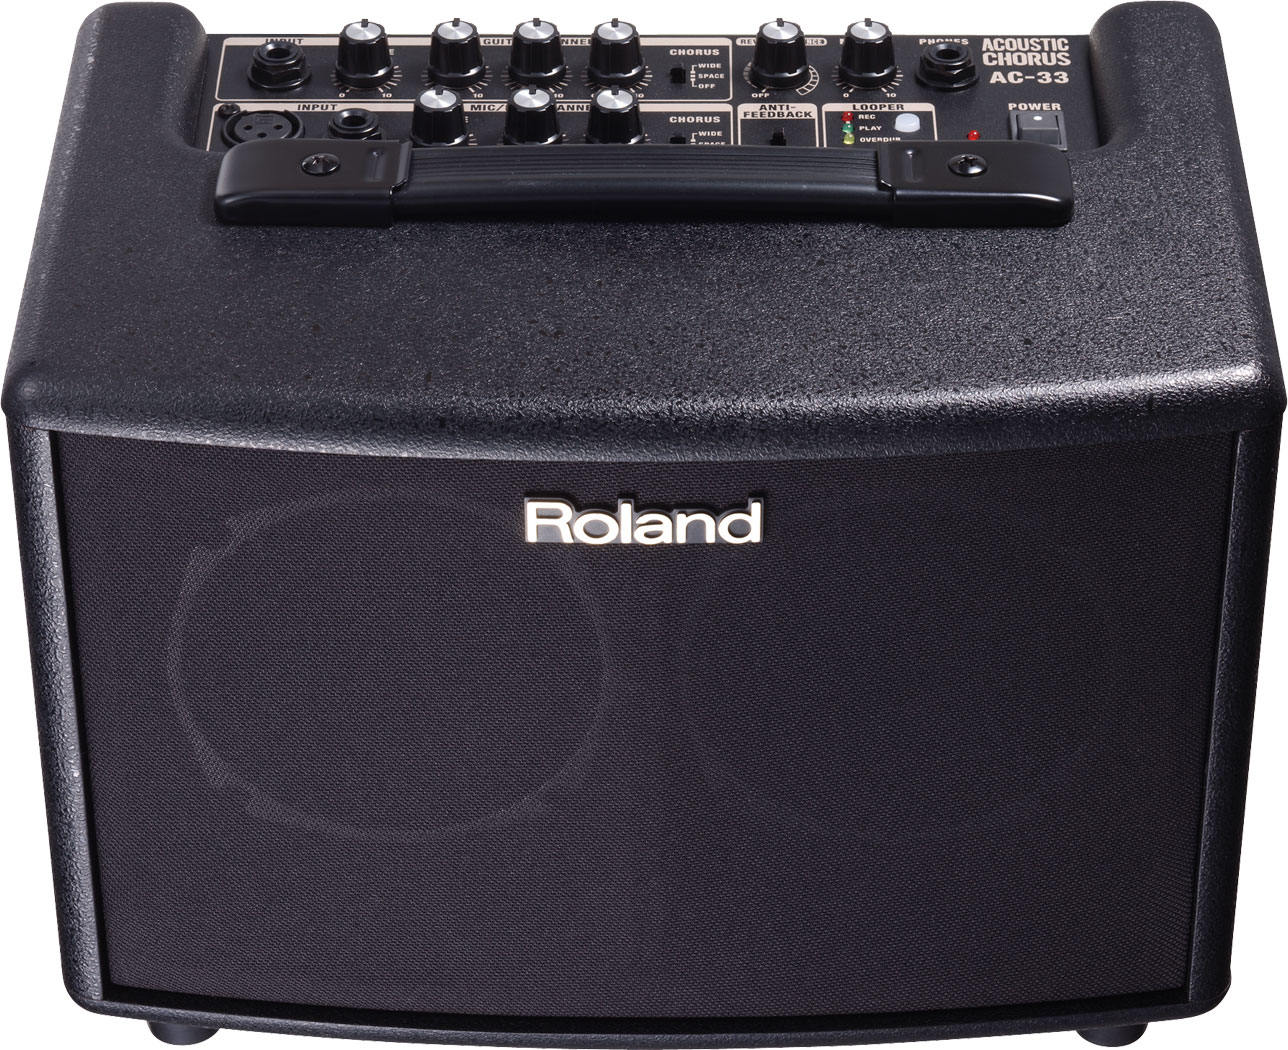 Roland Ac-33 Black - Combo amplificador acústico - Variation 4